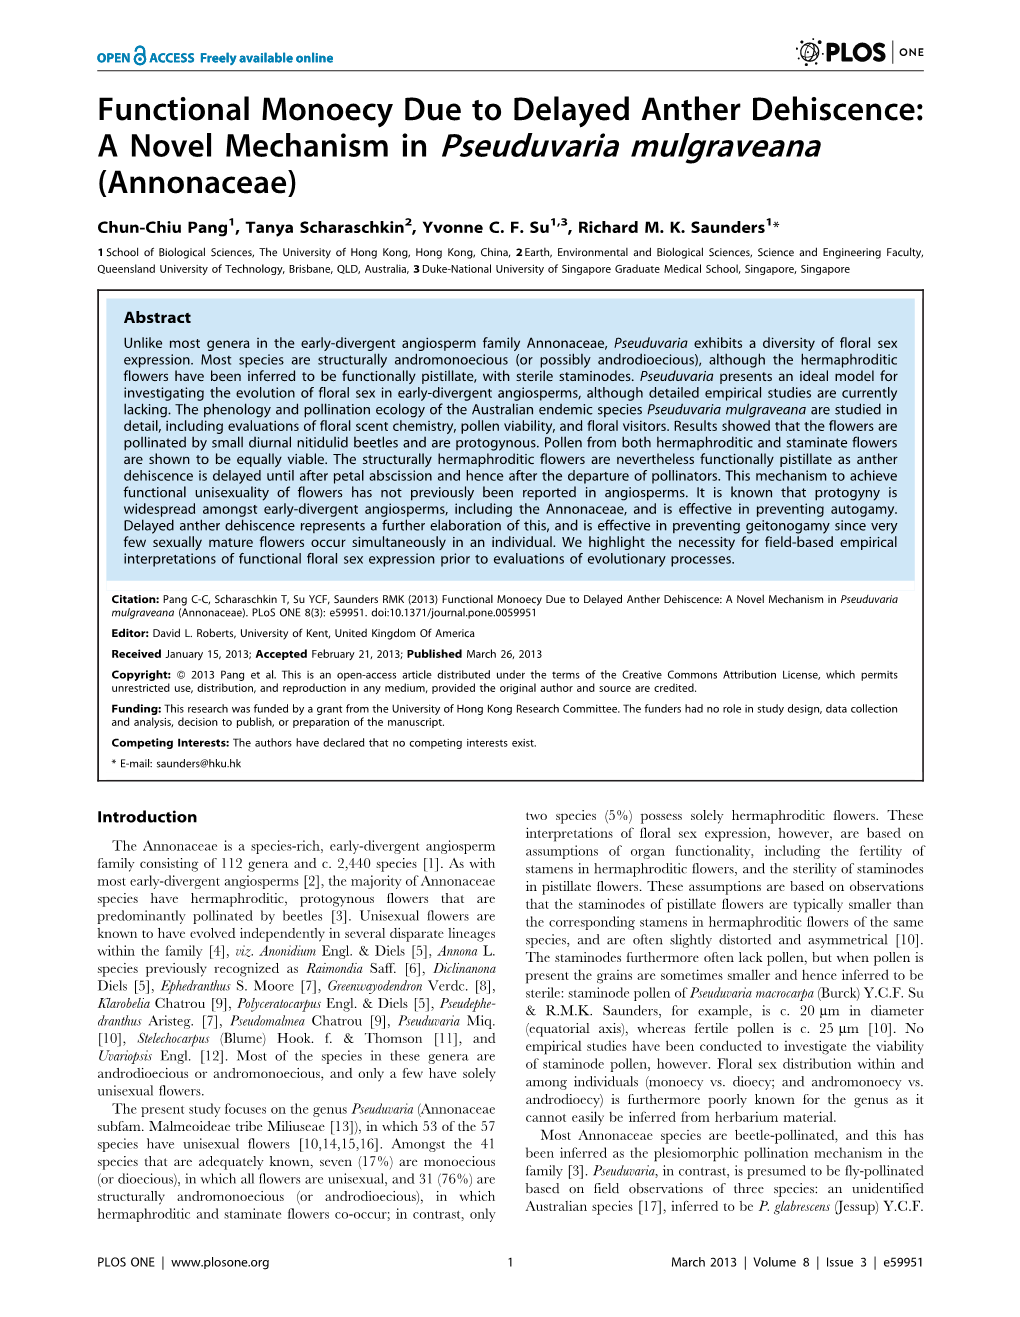 A Novel Mechanism in Pseuduvaria Mulgraveana (Annonaceae)